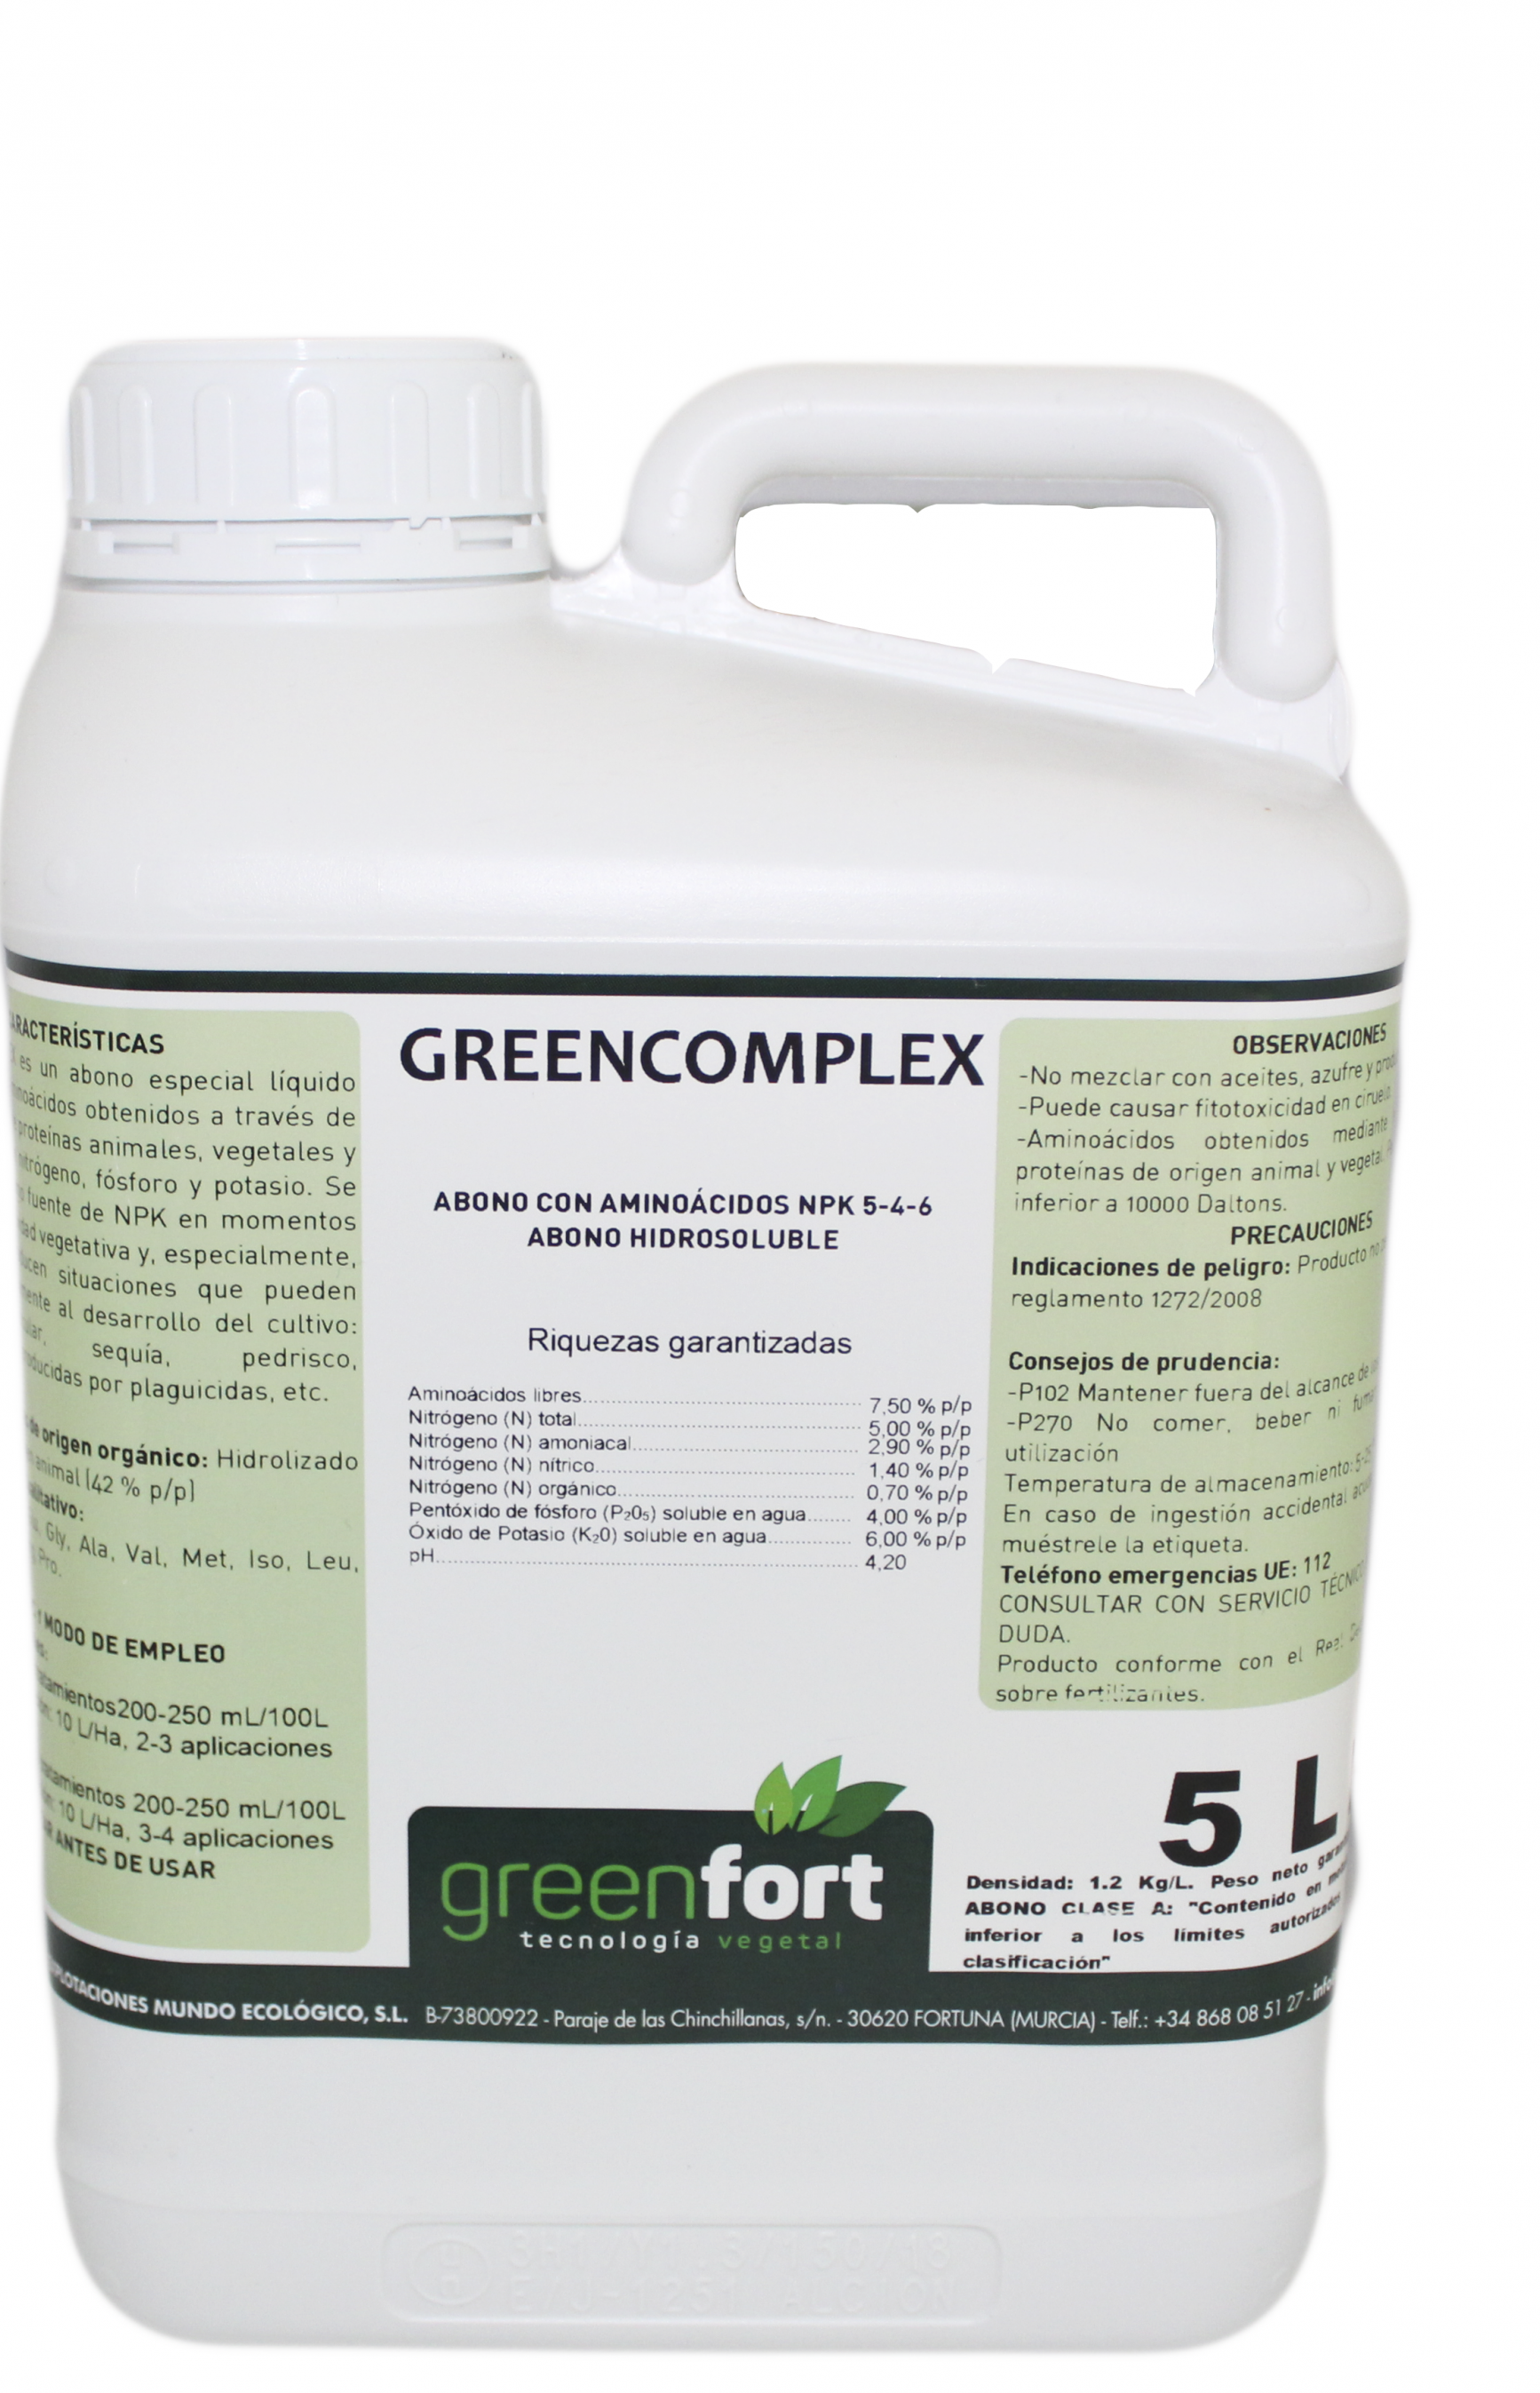 greencomplex_1